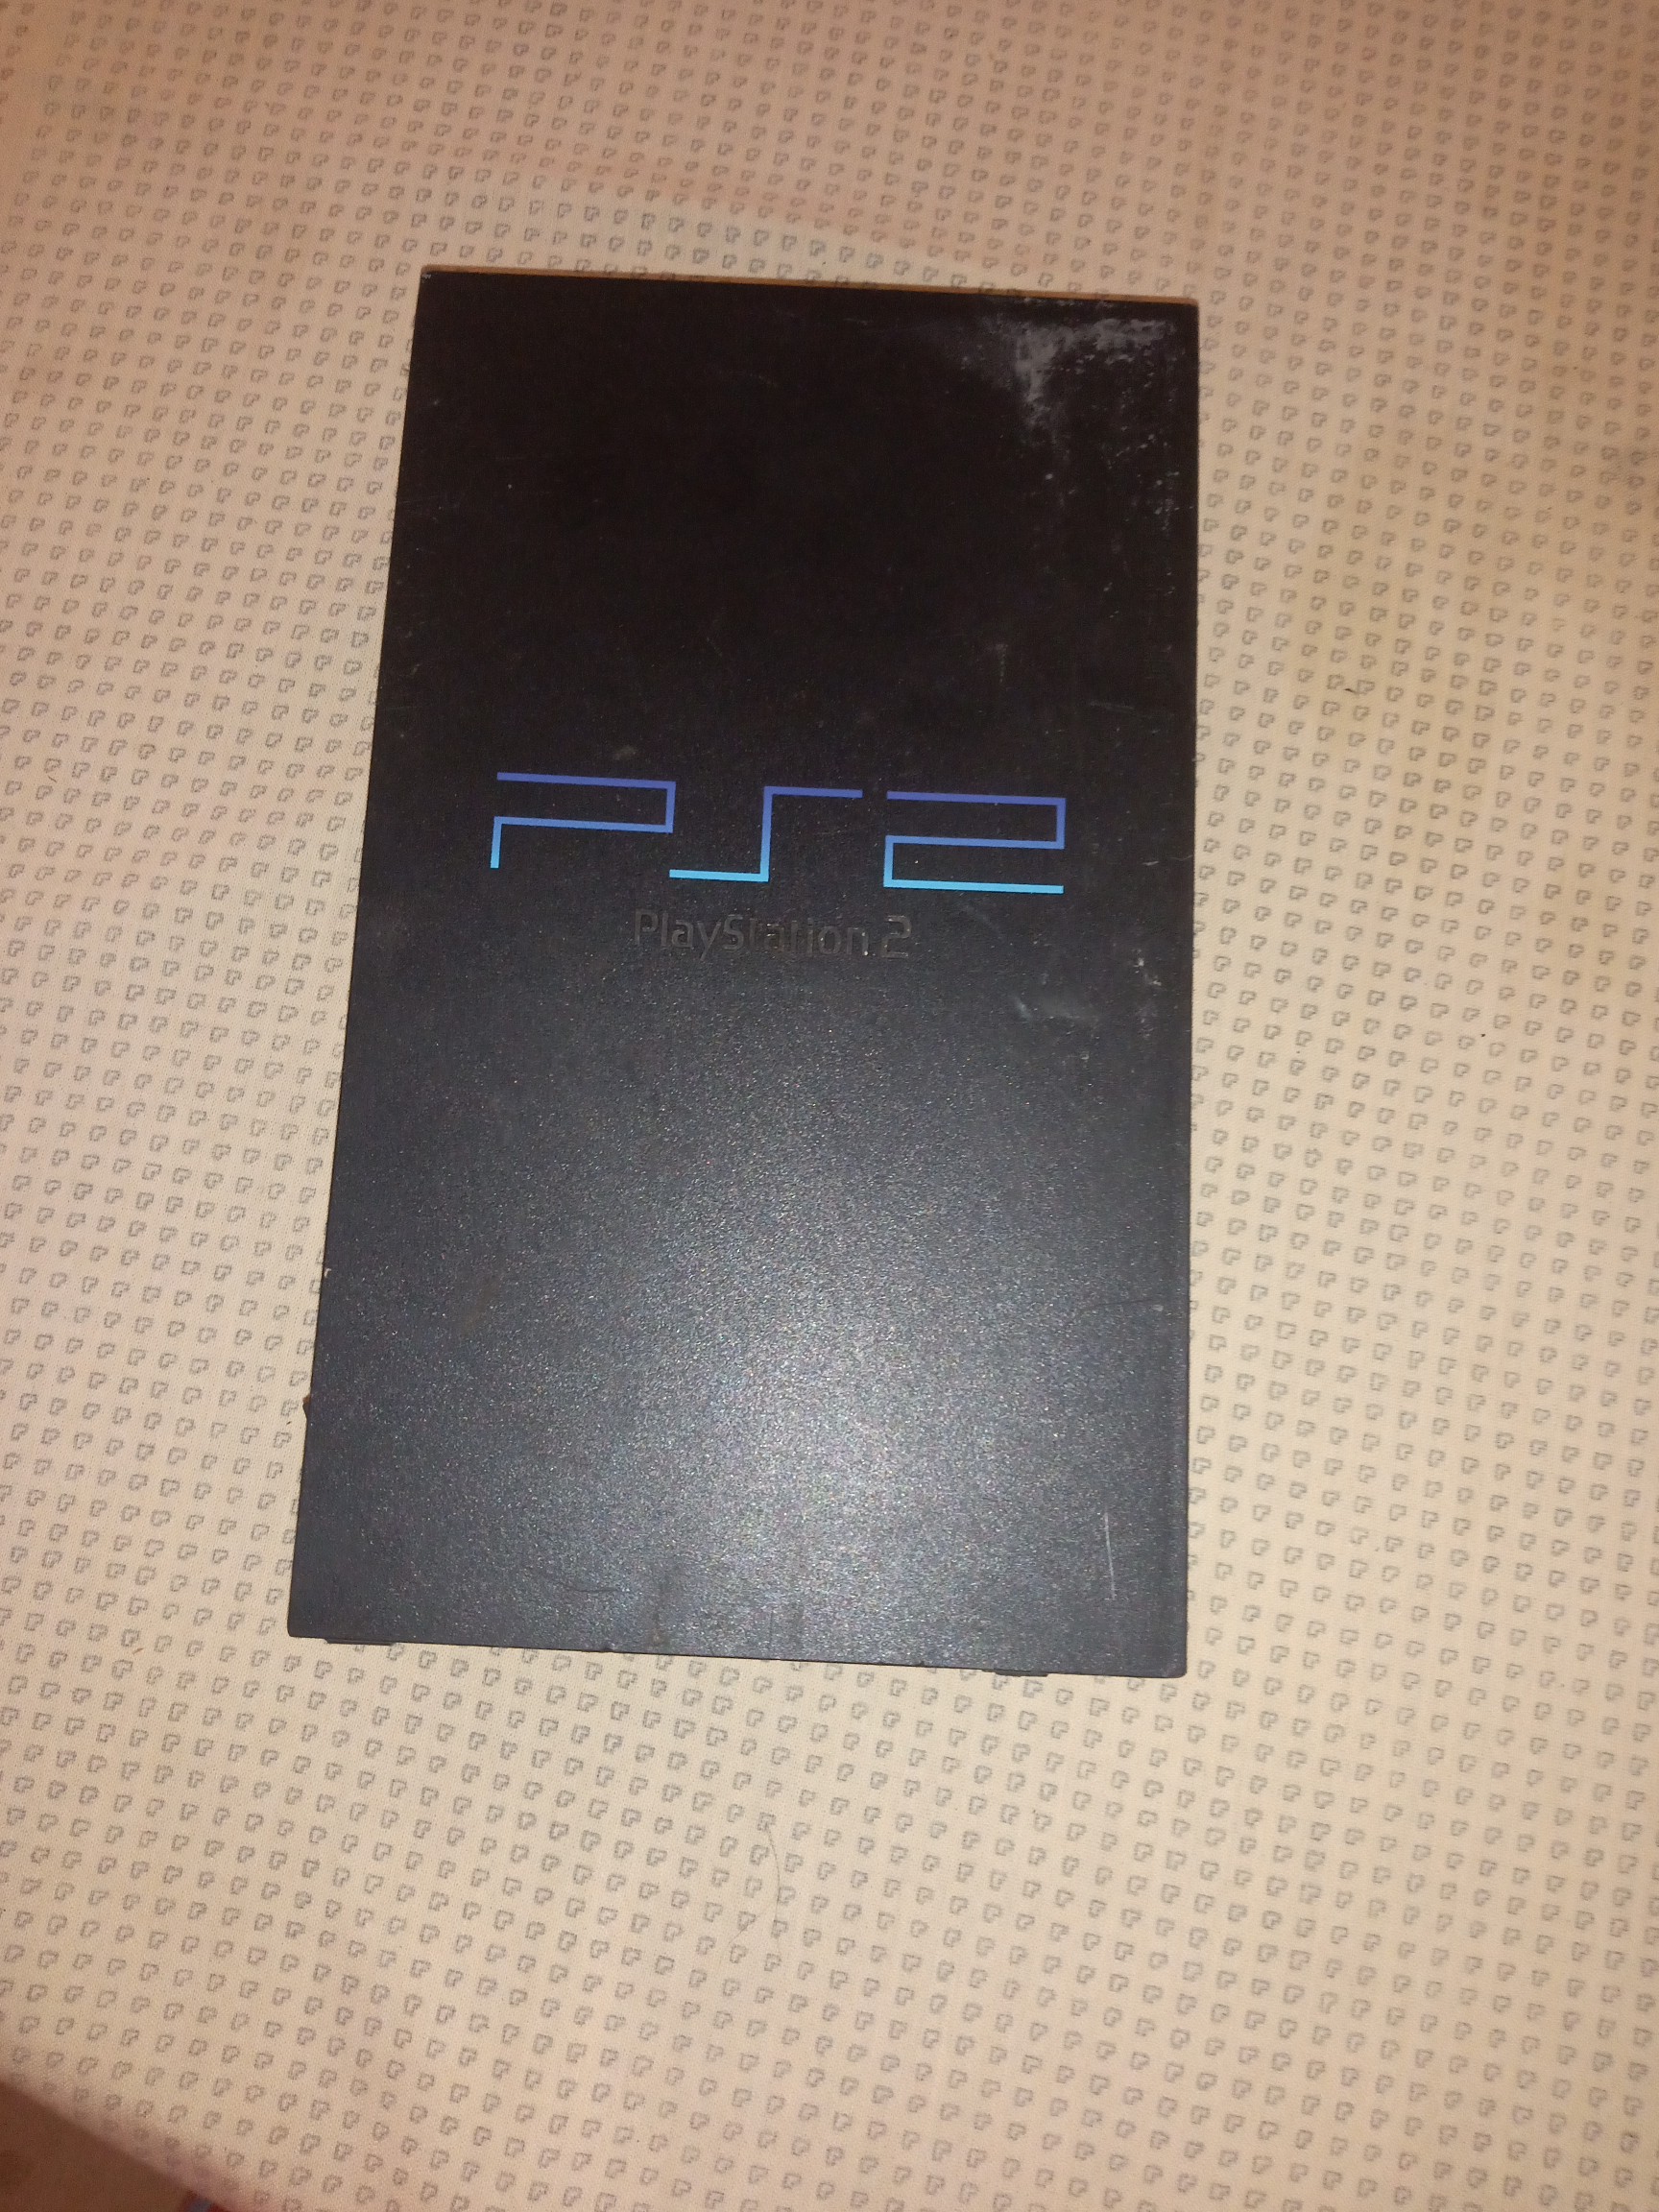 consolas y videojuegos - Vendo este PS 2 está bueno trae con el un juego y no trae control